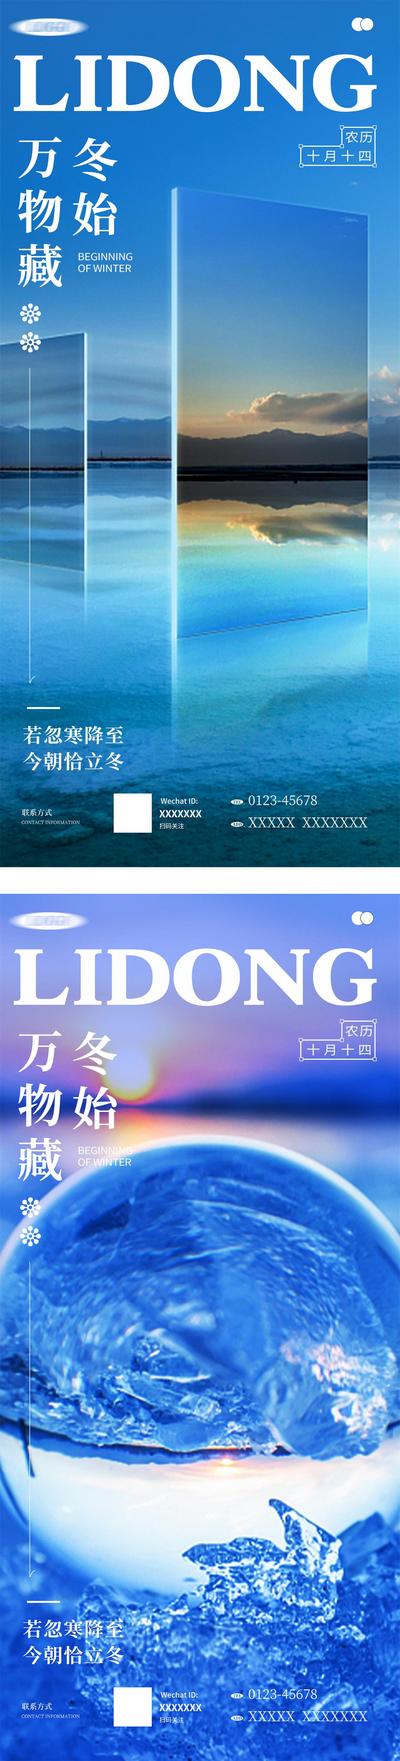 南门网 广告 海报 节气 立冬 风景 系列